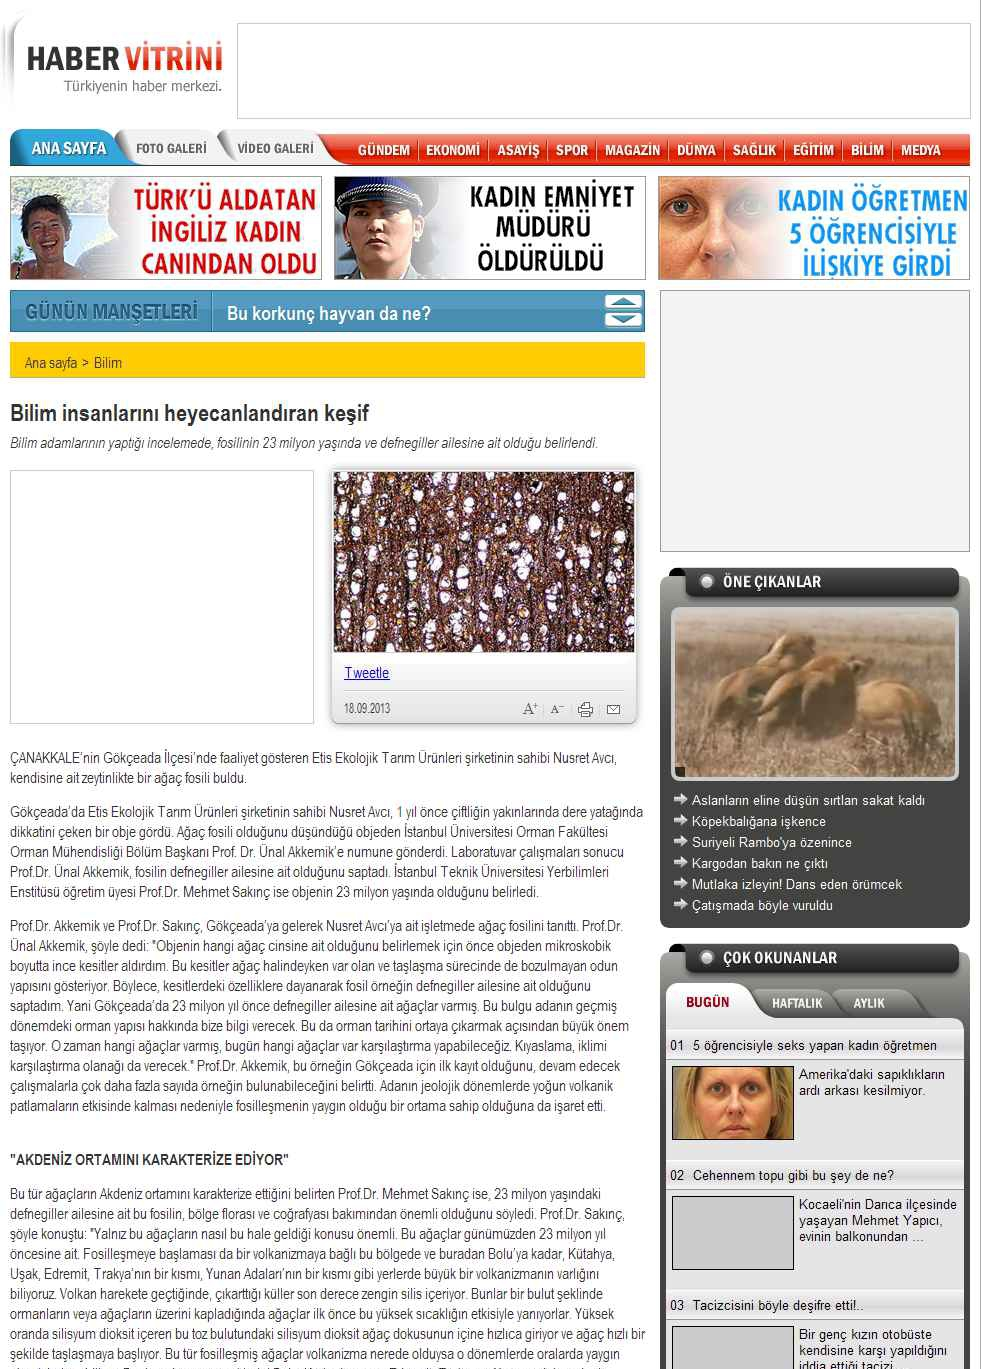 Portal Adres BILIM INSANLARINI HEYECANLANDIRAN KESIF : www.habervitrini.